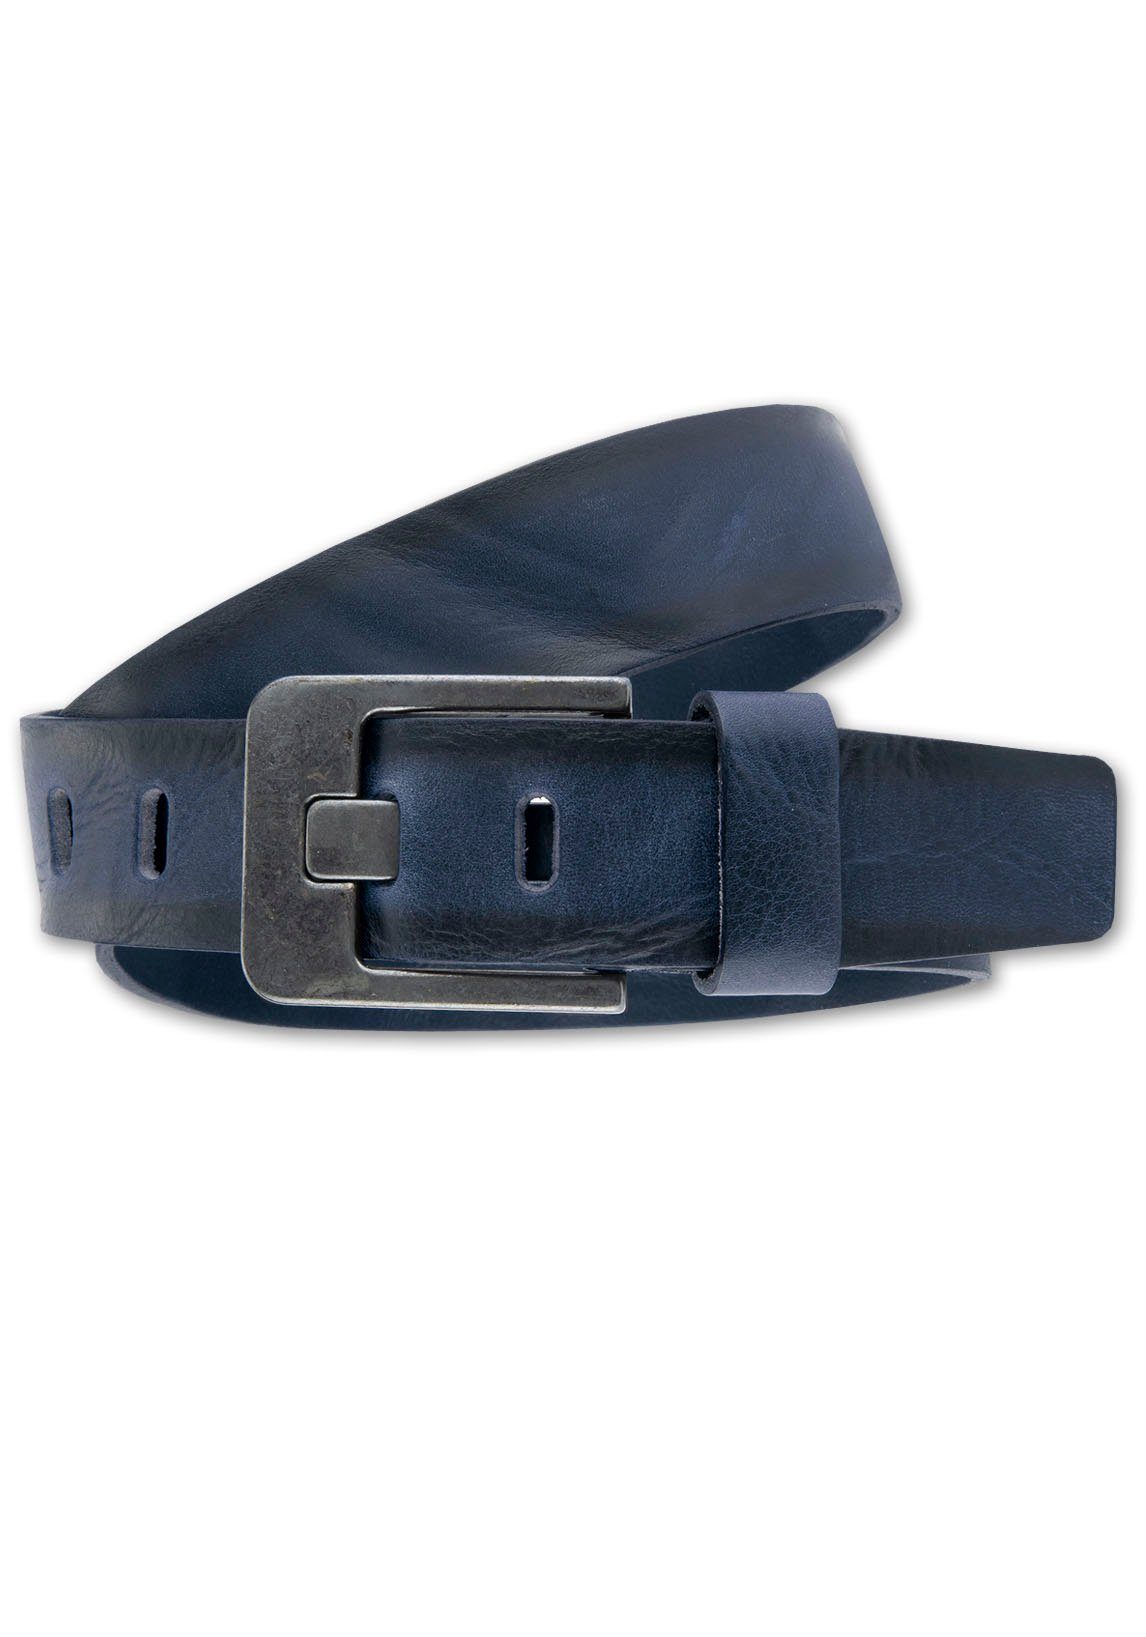 BERND GÖTZ Ledergürtel Ledergürtel mit markanter dunkler Designschließe dunkelblau | Gürtel